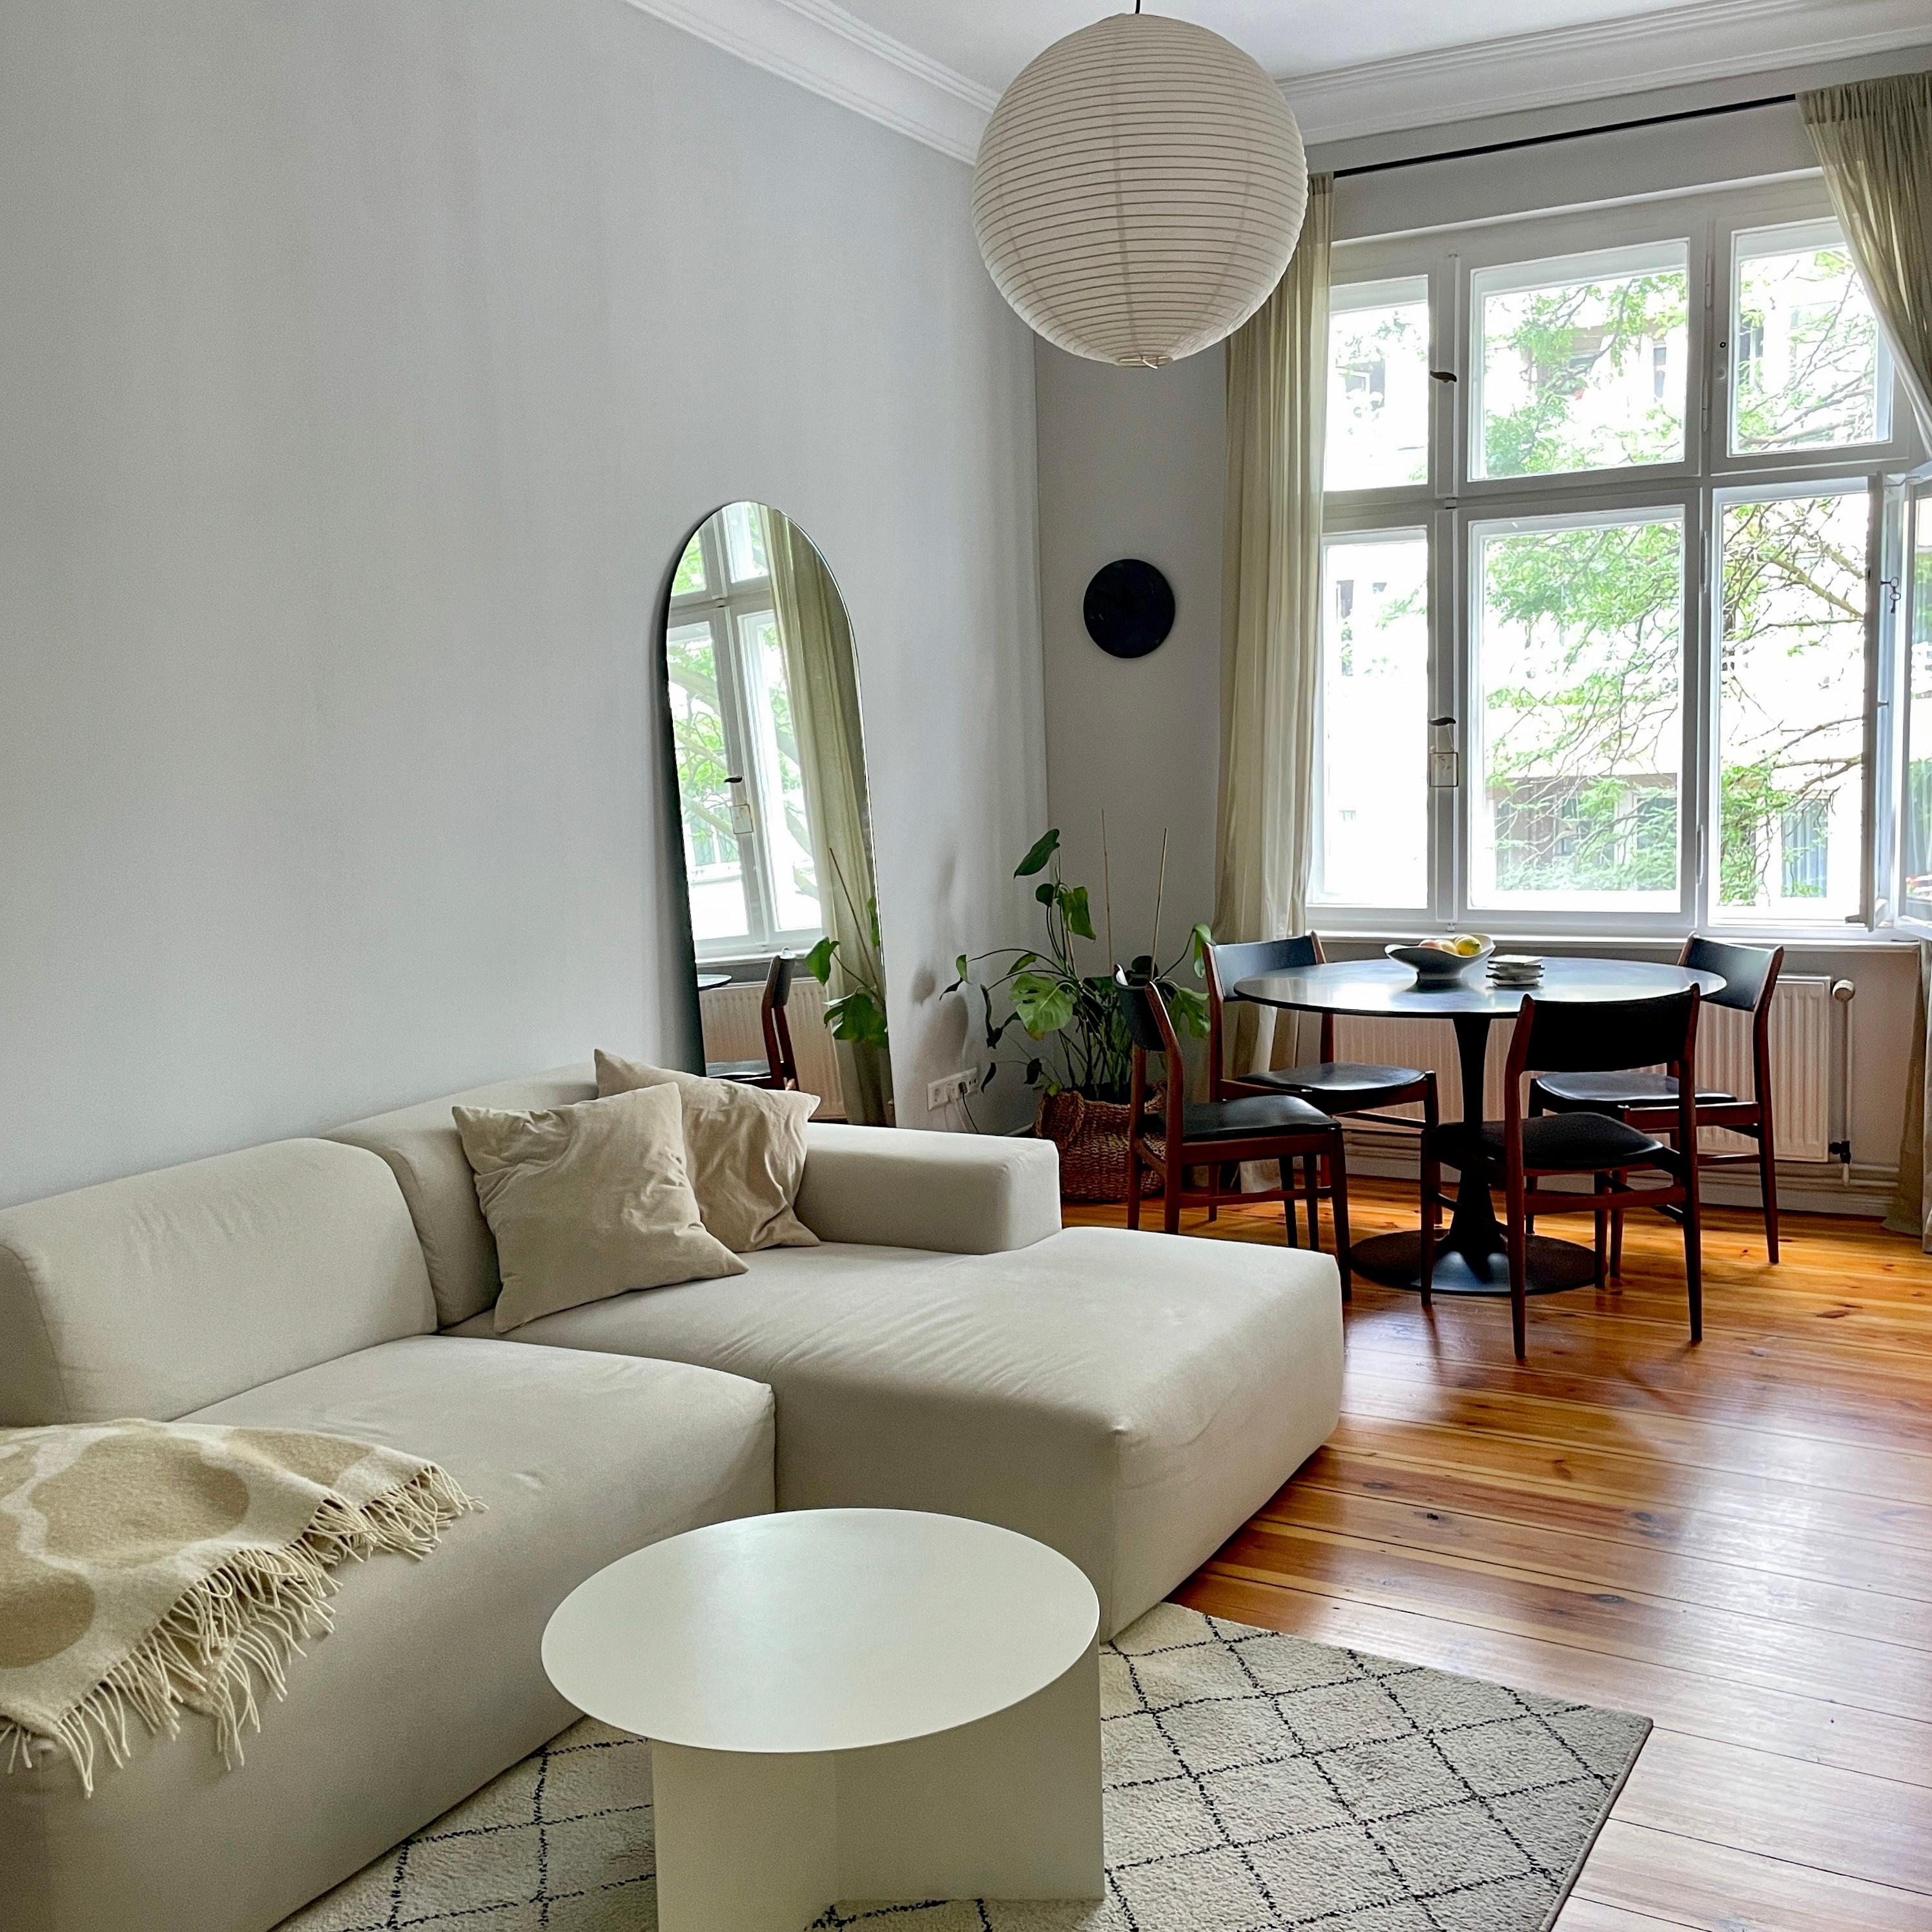 Living Room rearrangements: Sofa, so good! 
#livingroom #rearrangment #altbauliebe #beigeaesthetics